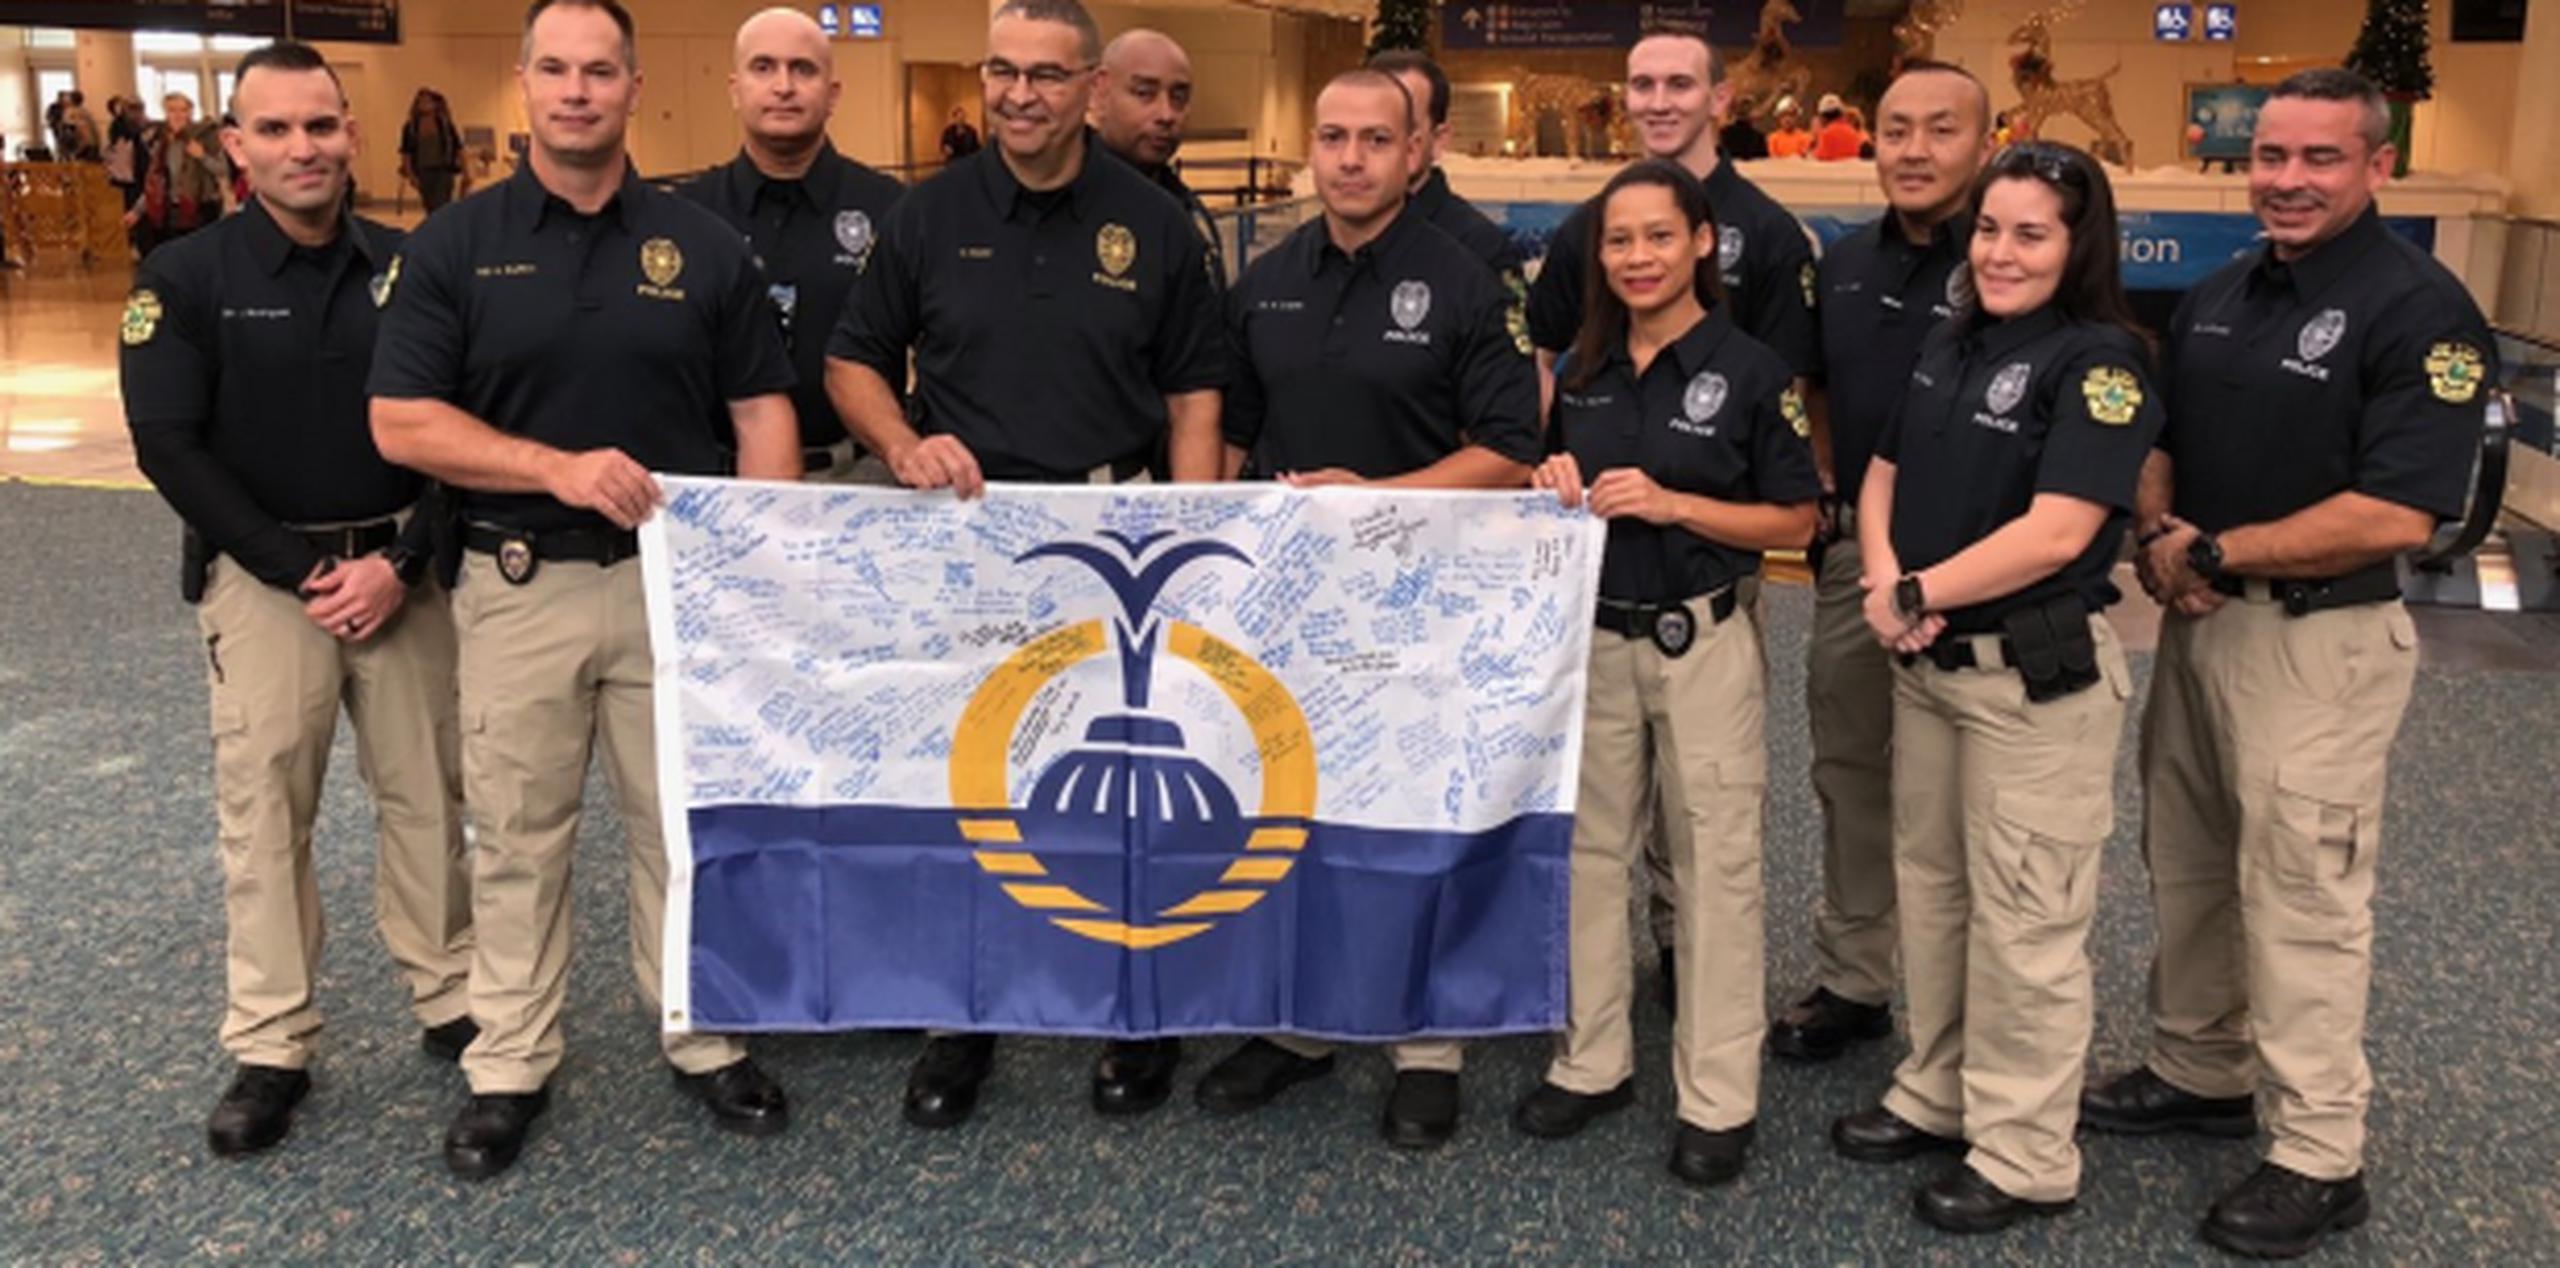 El grupo trajo una bandera firmada por el alcalde Buddy Dyer, empleados municipales y el grupo de policías como una muestra de su solidaridad y compromiso en ayudar a Puerto Rico. (Archivo)